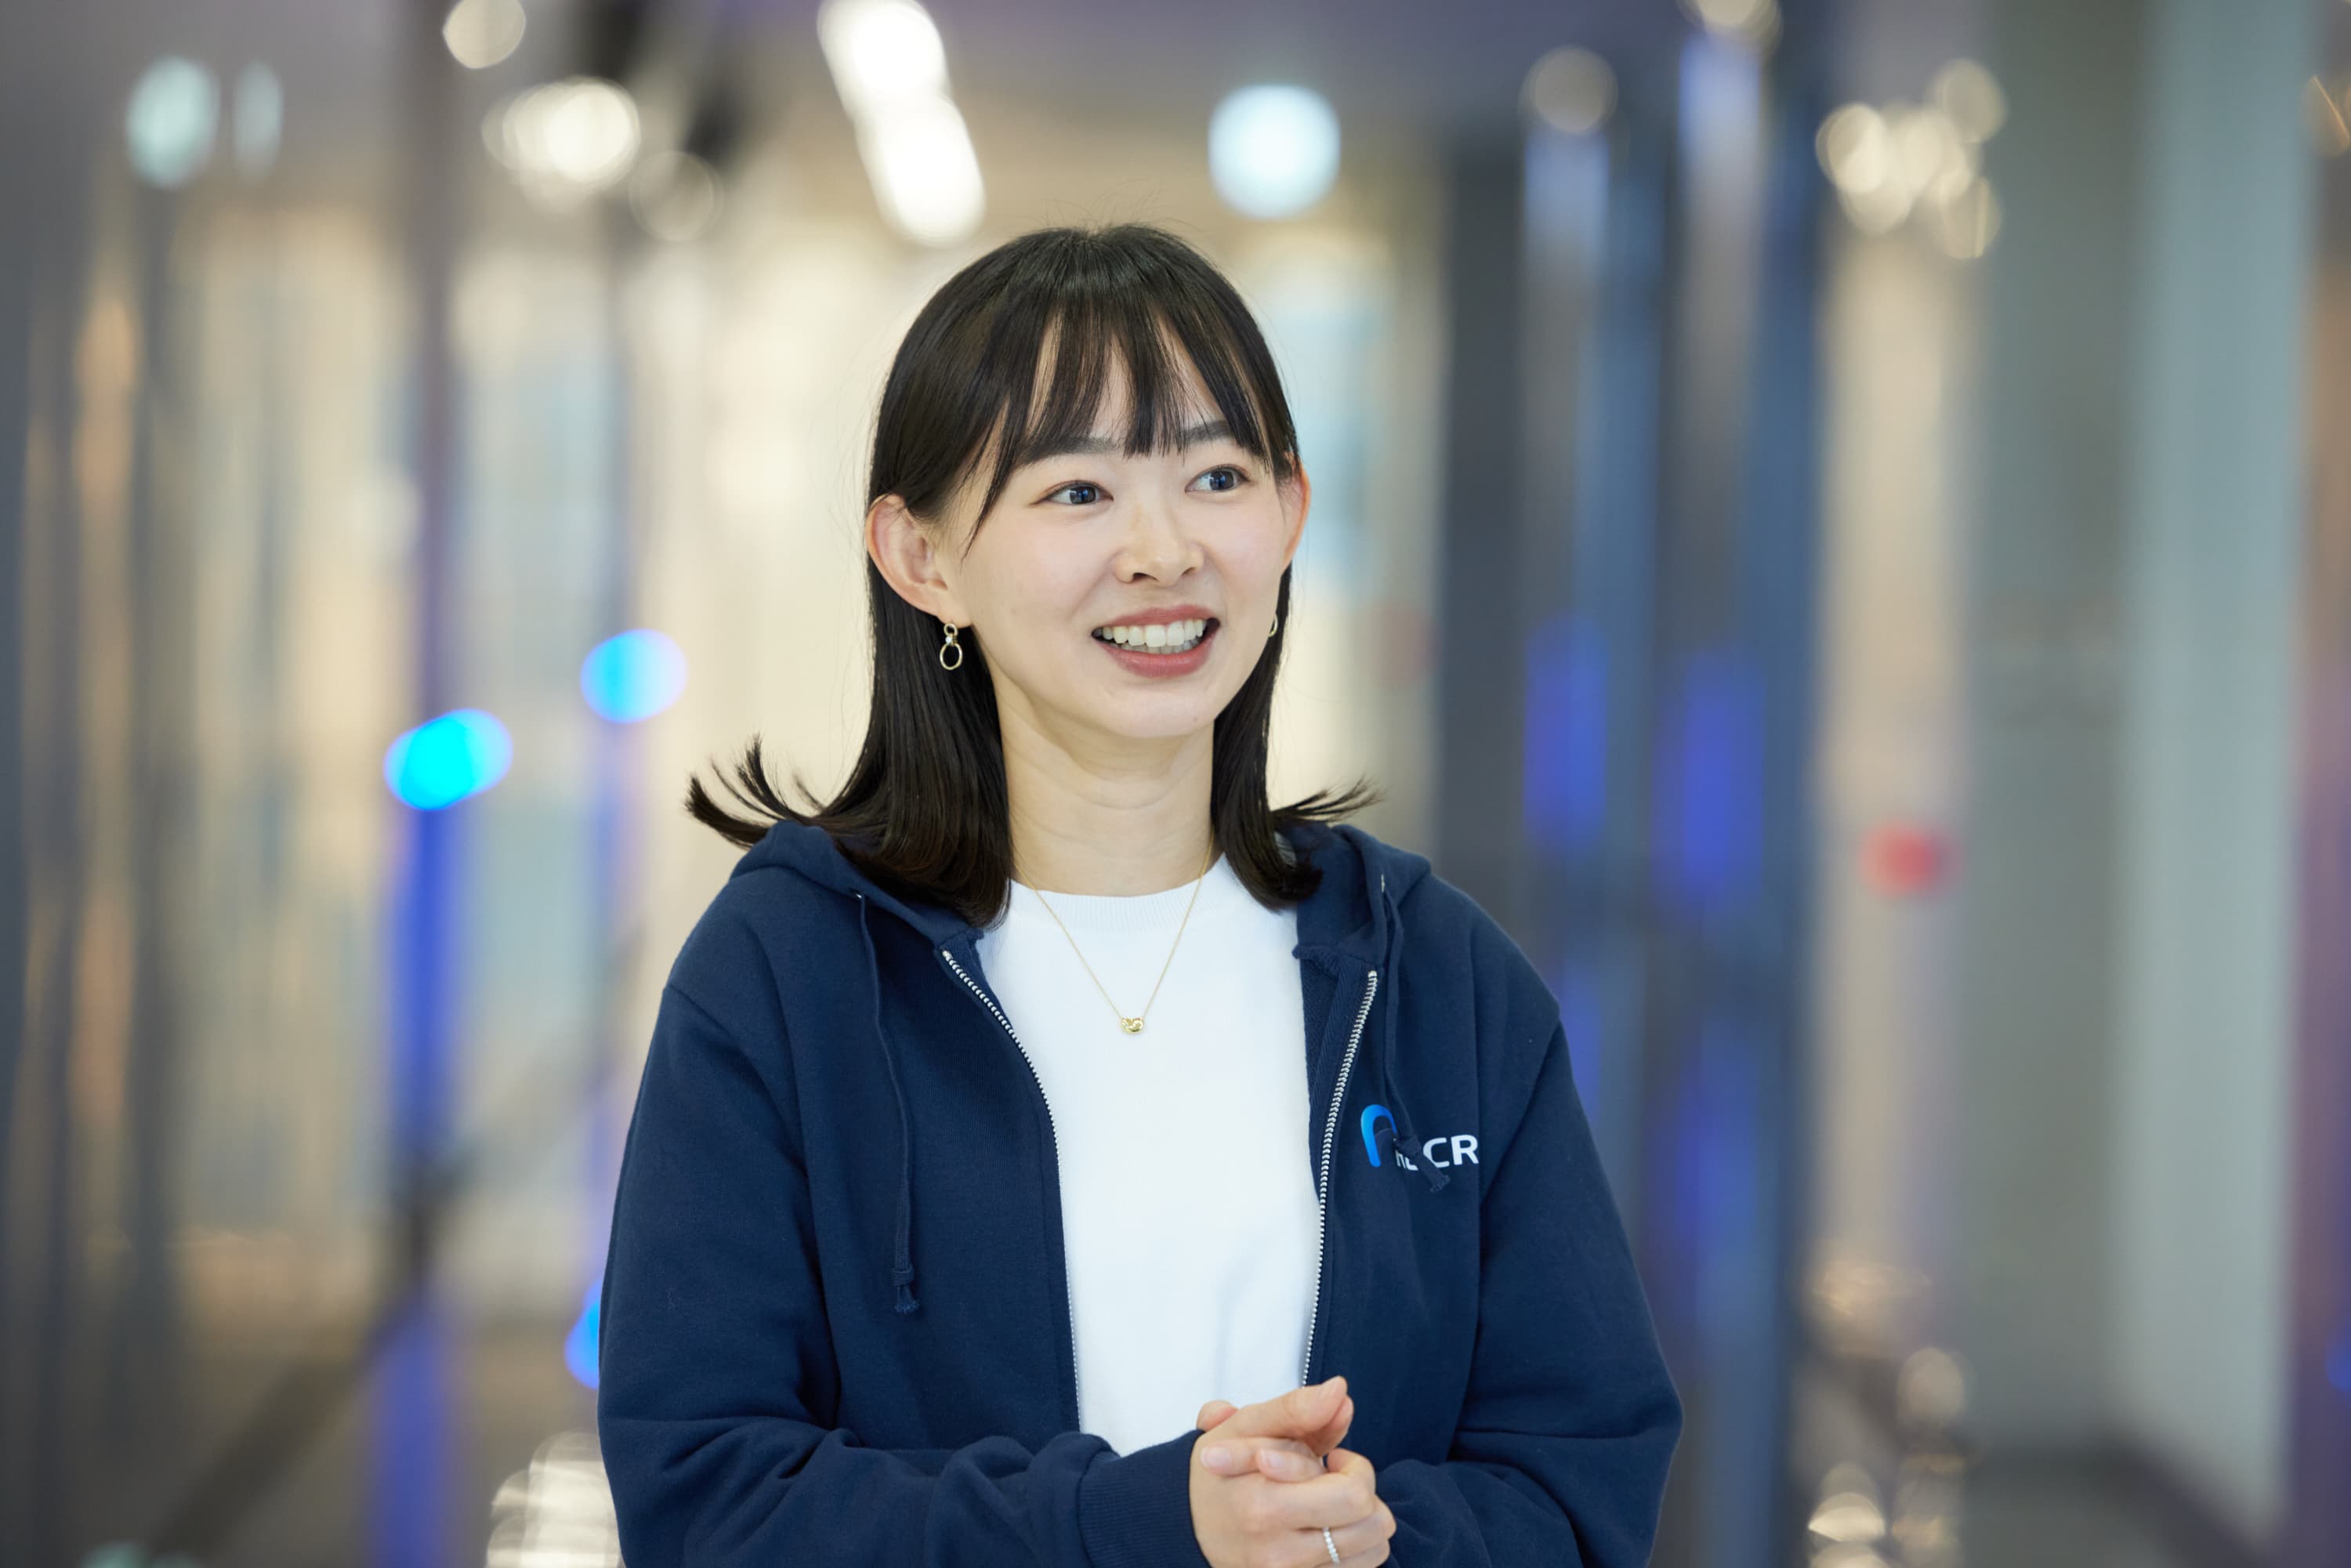 「リクルートのIT技術をもっとアウトプットしていきたい」と語る松尾奈美